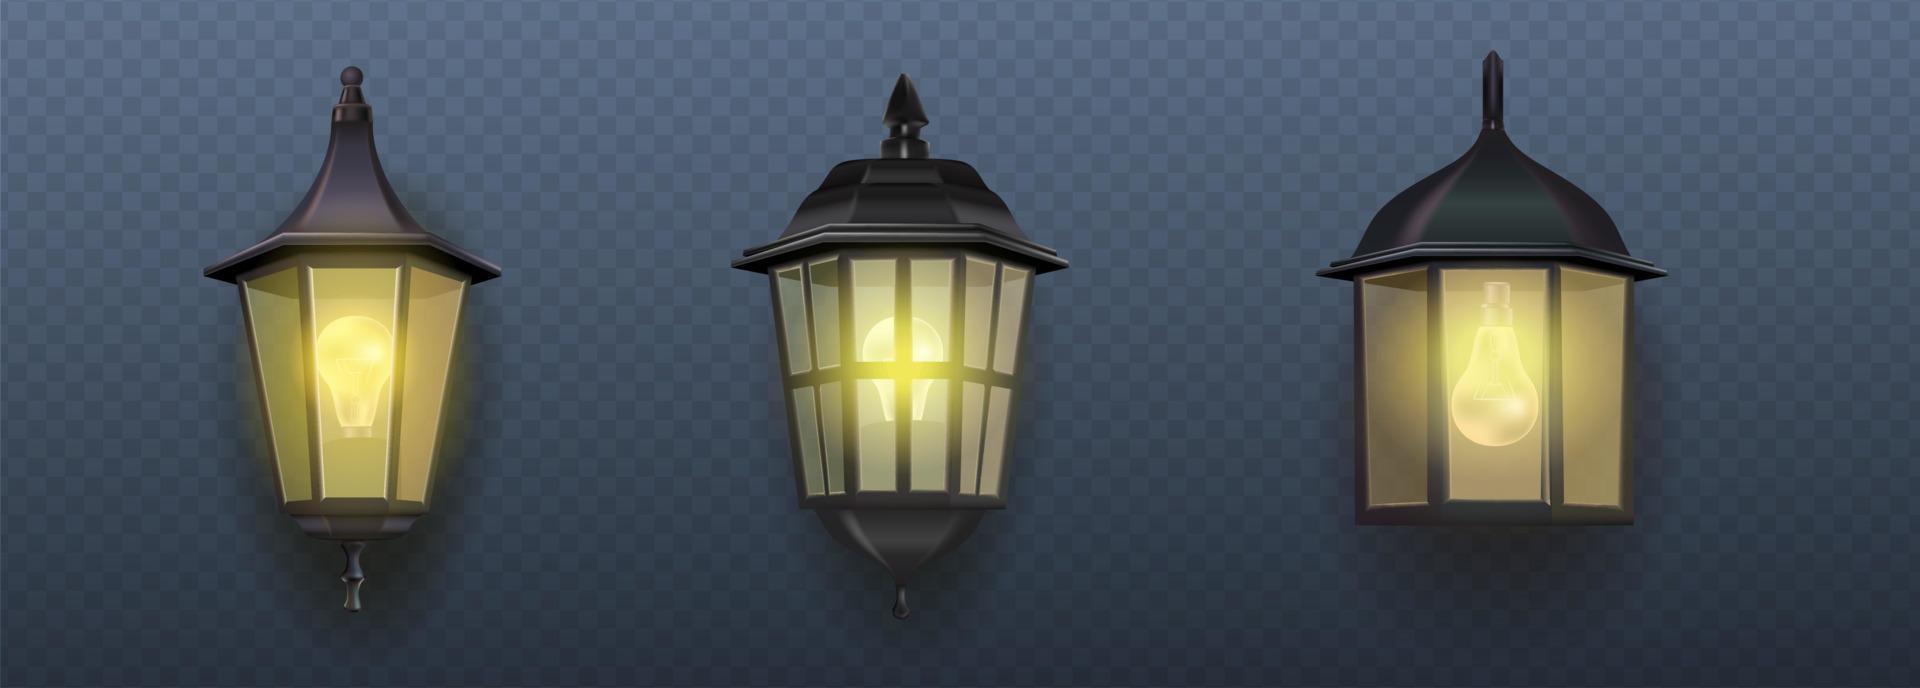 Icono de vector realista 3d. colección de lámparas de luz de jardín de pared exterior en diferentes estilos. luz de la calle. lámpara de electricidad de metal de estilo antiguo.